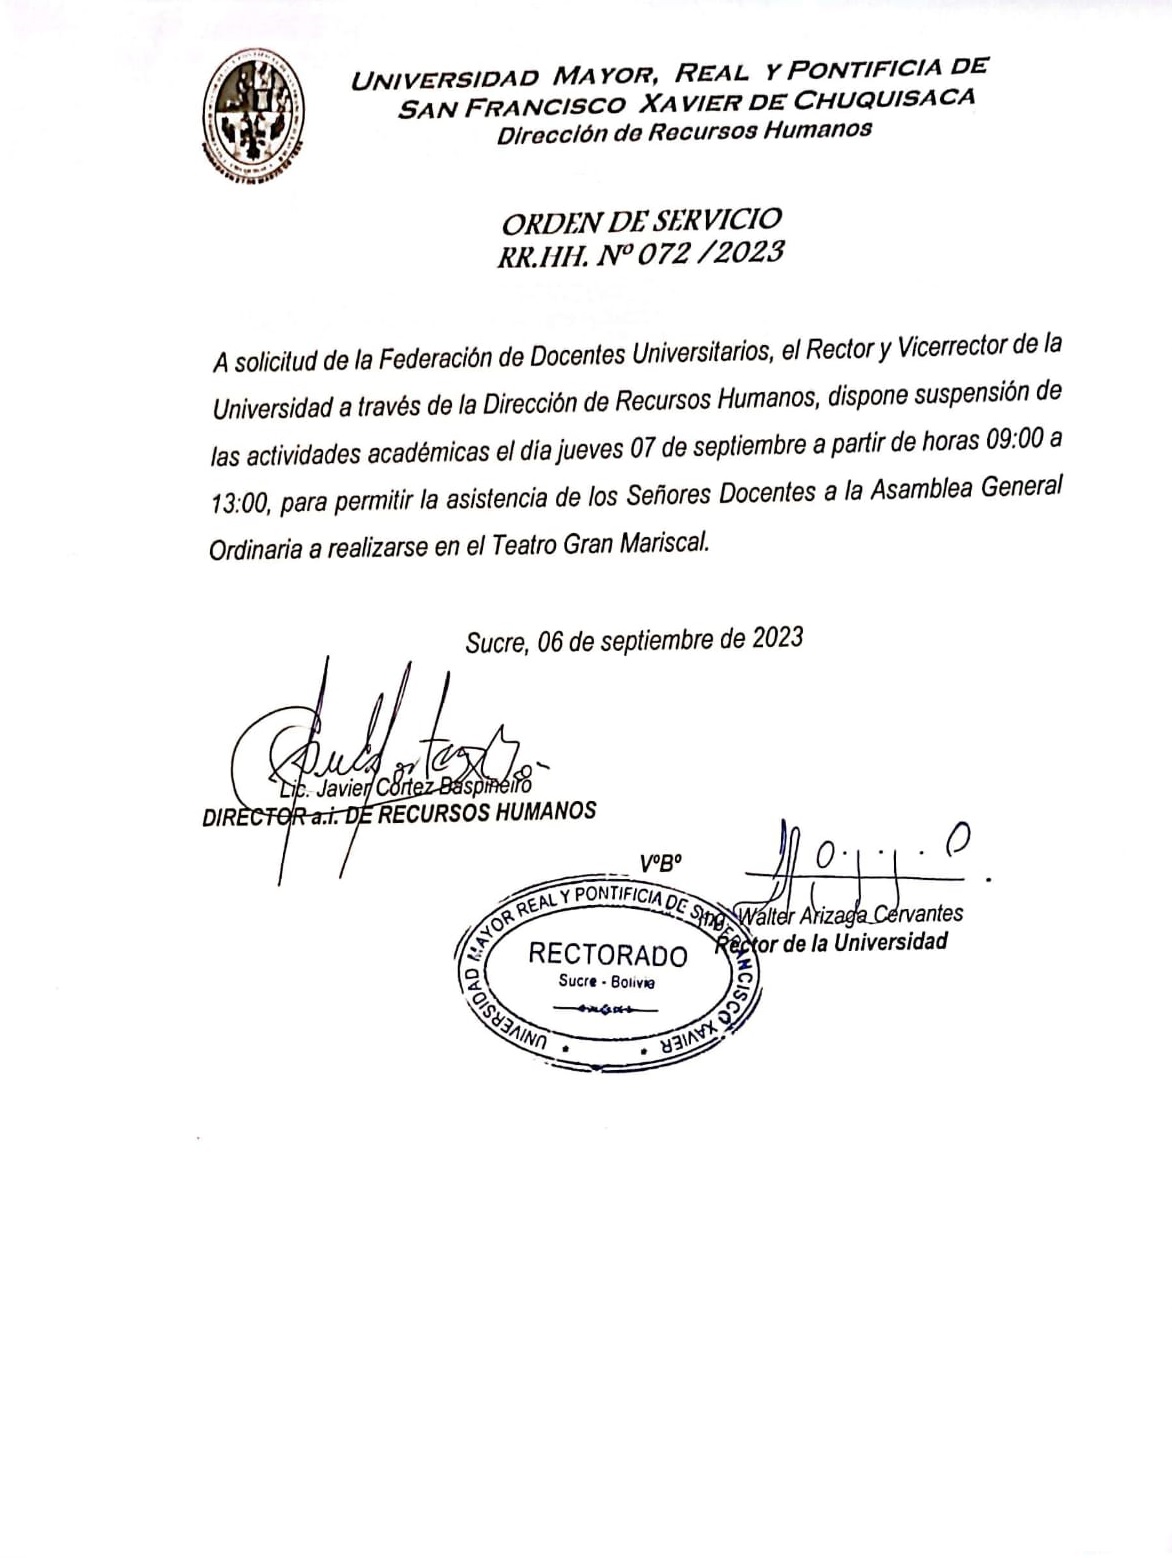 ORDEN DE SERVICIO RR.HH. Nº 072/2023, SUSPENSIÓN DE ACTIVIDADES ACADÉMICAS.